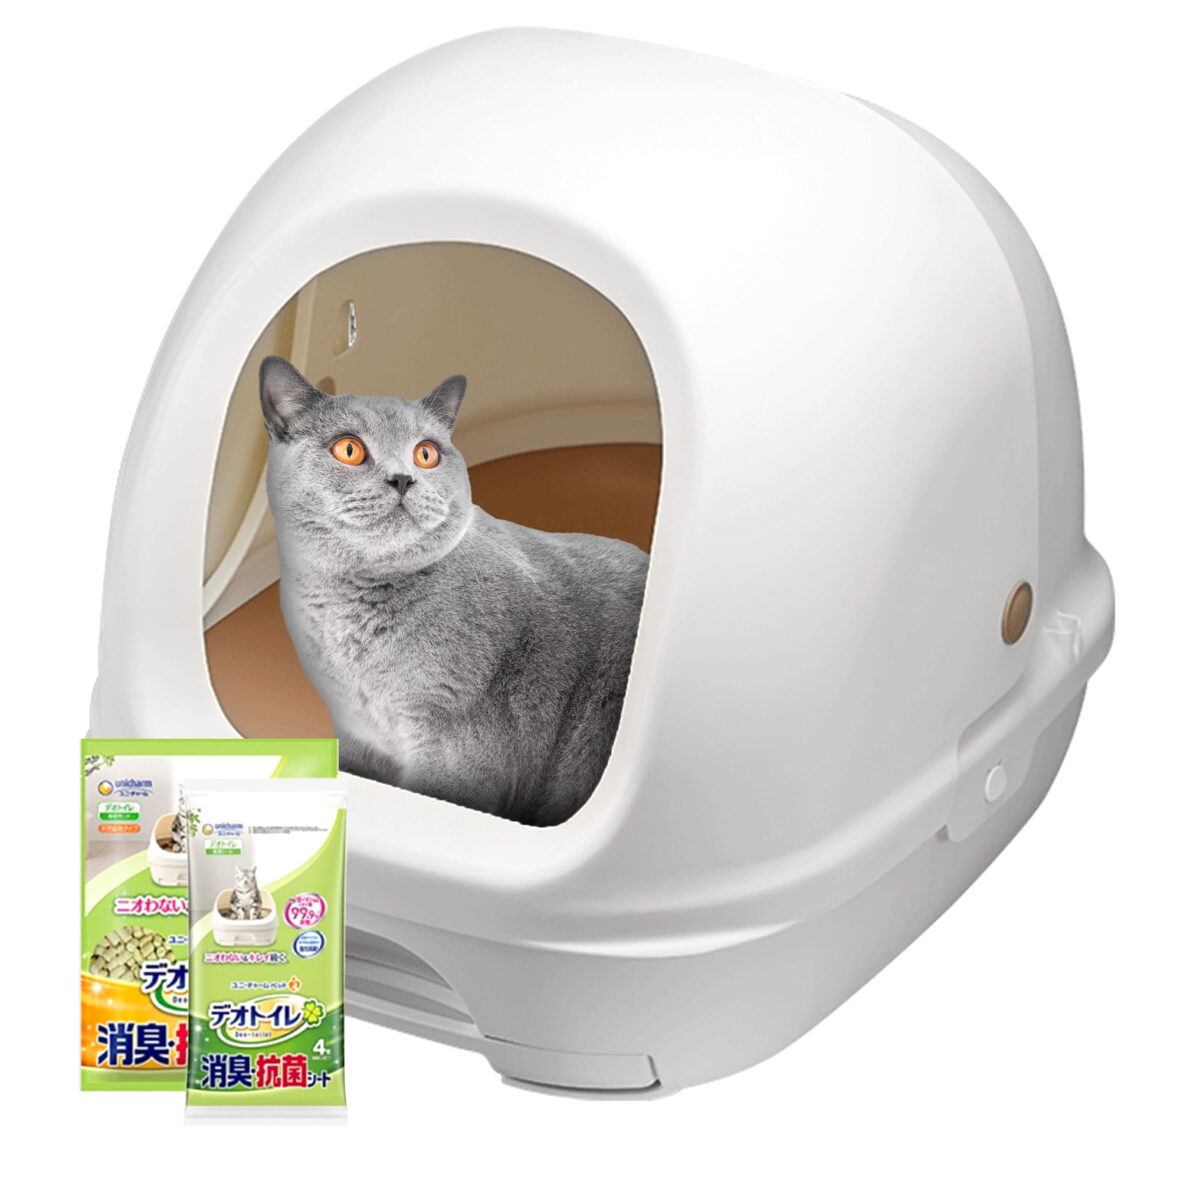 Закрытый двухуровневый кошачий туалет (комплект: лоток + гранулы 1,6 кг + 4 пеленки) Оригинальная версия Hooded Tidy Cats Breeze cat litter box из Японии (Японский кошачий туалет)